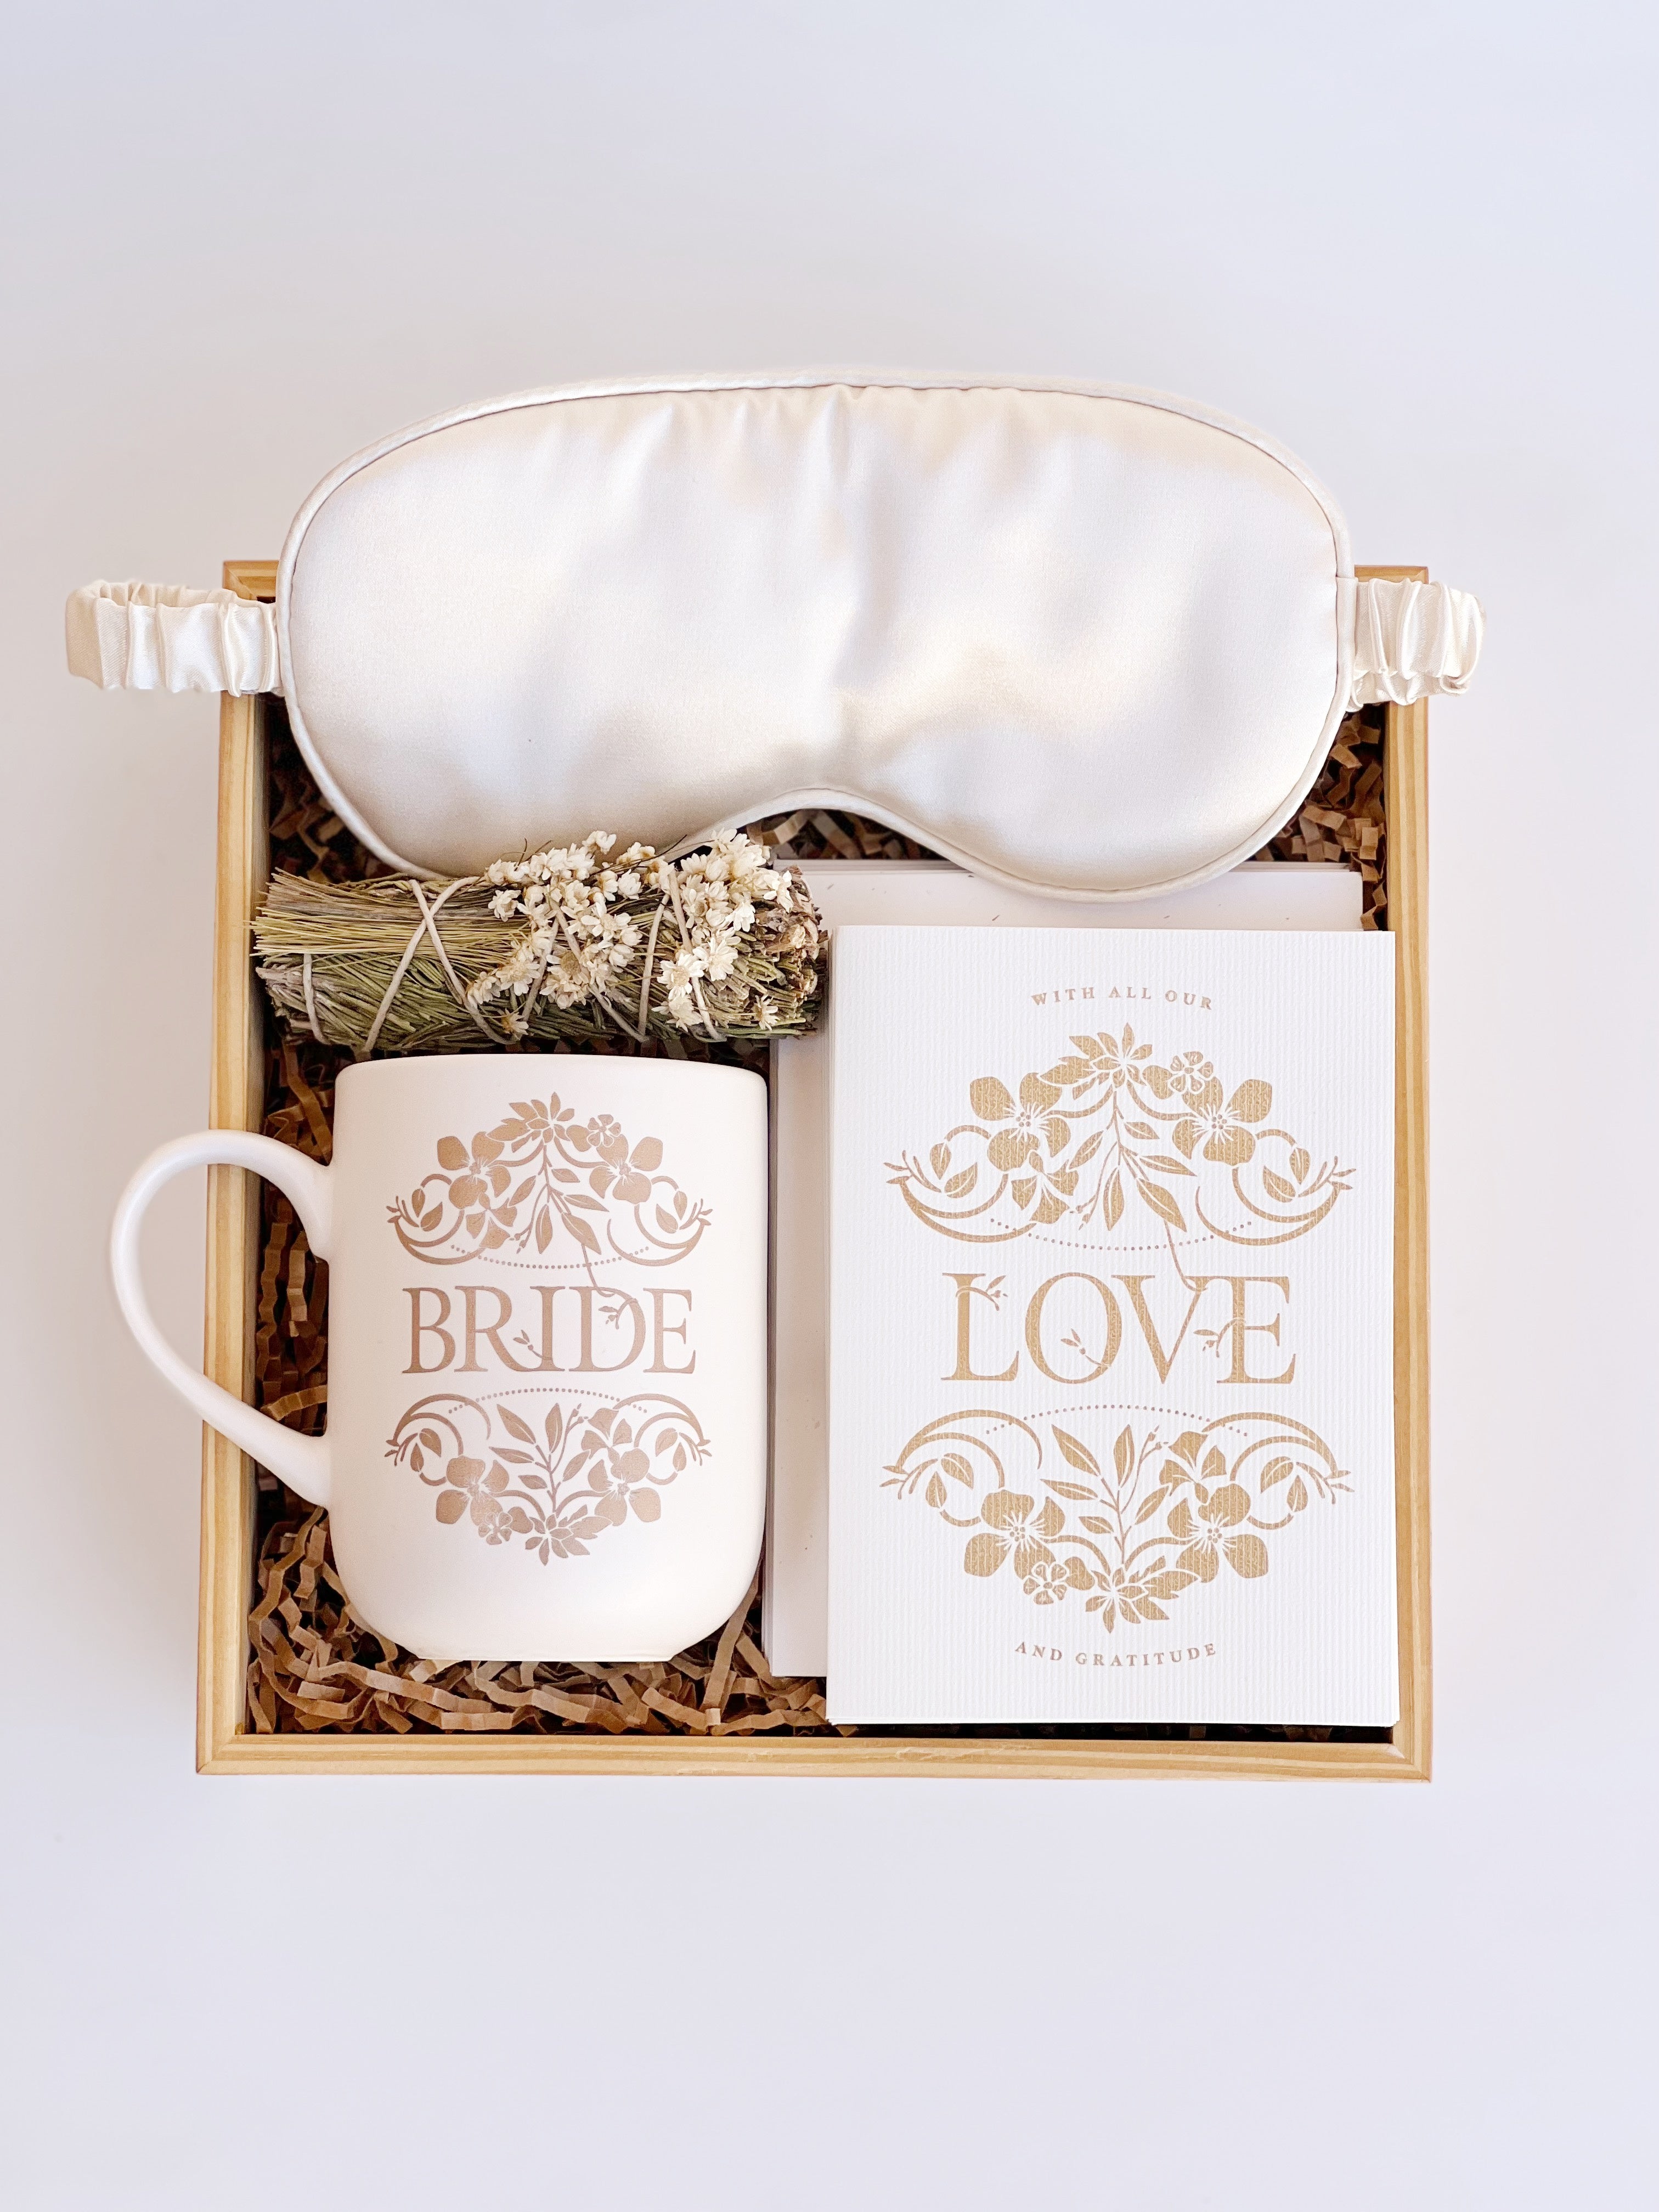 The Bride Love Box